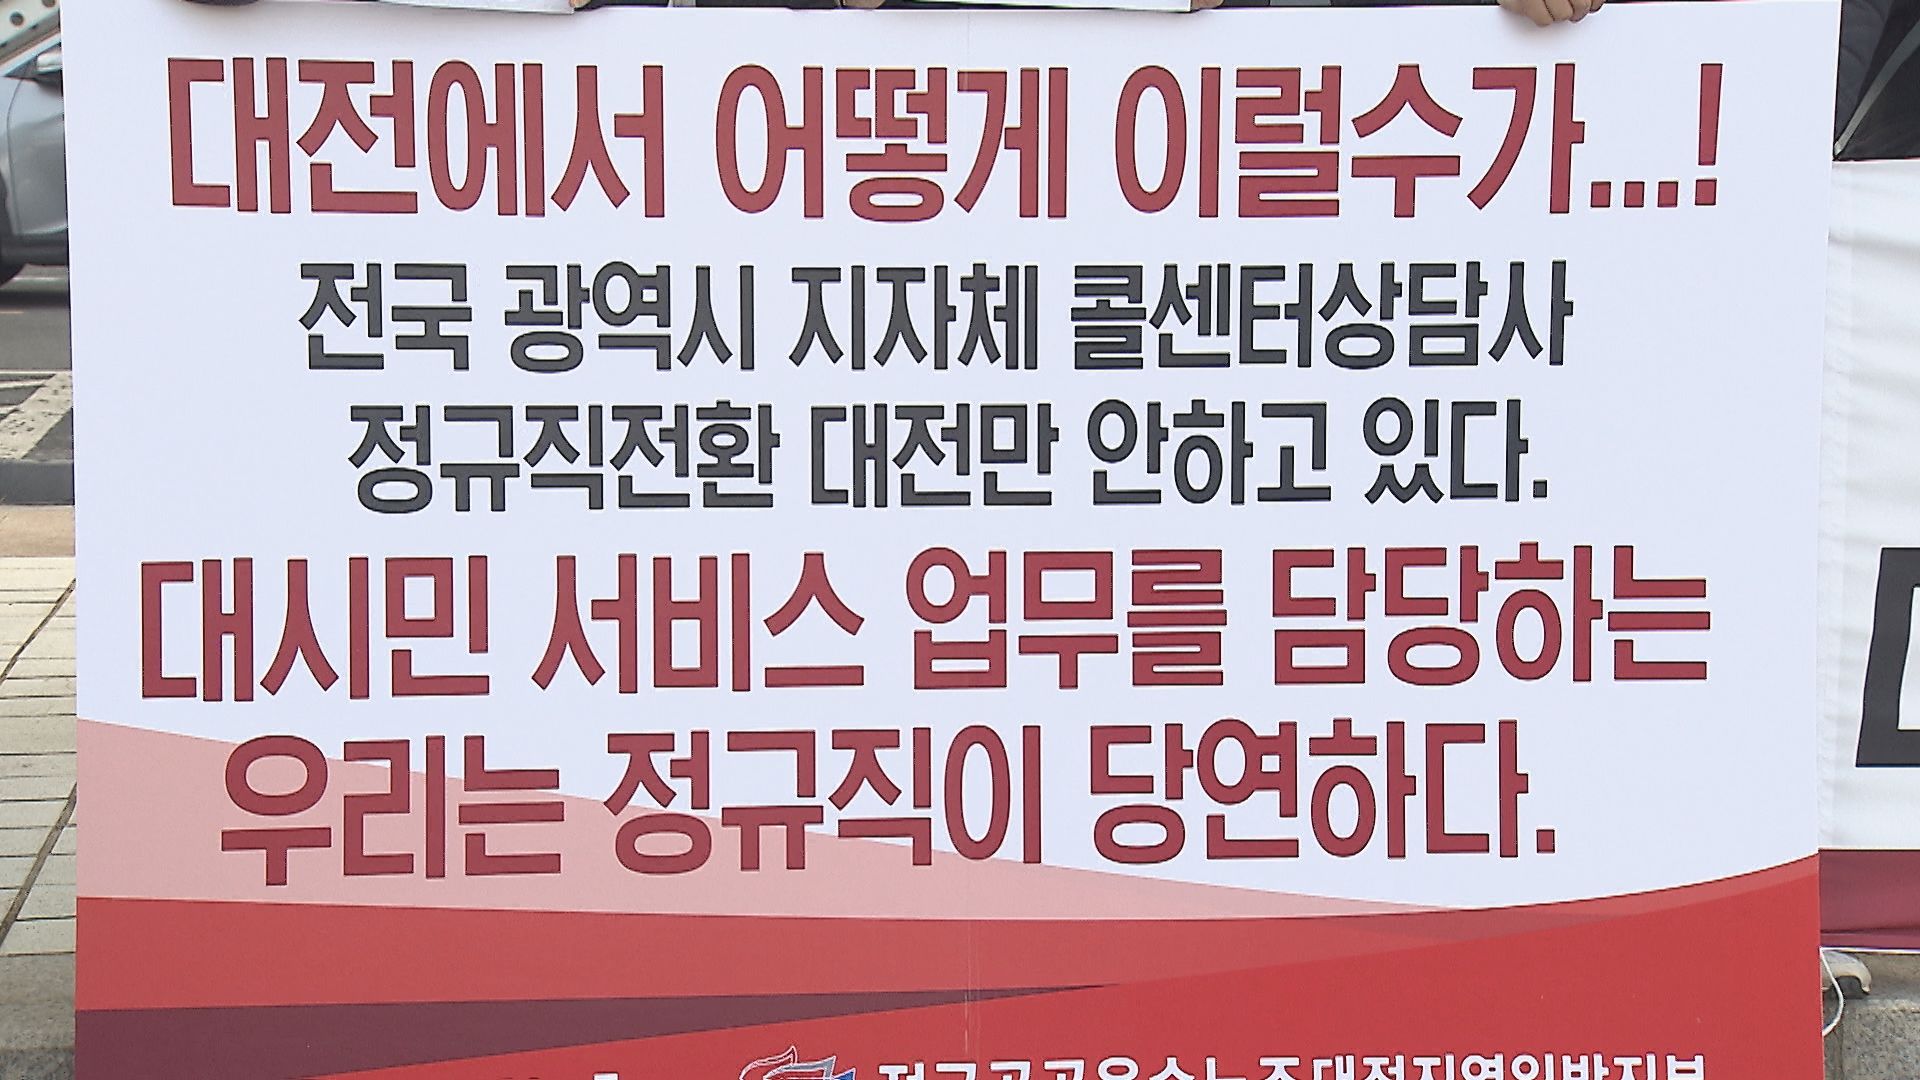 광역시 중 대전만 ‘직접고용’이 이뤄지지 않았다며 반발하는 대전120콜센터 노동조합.